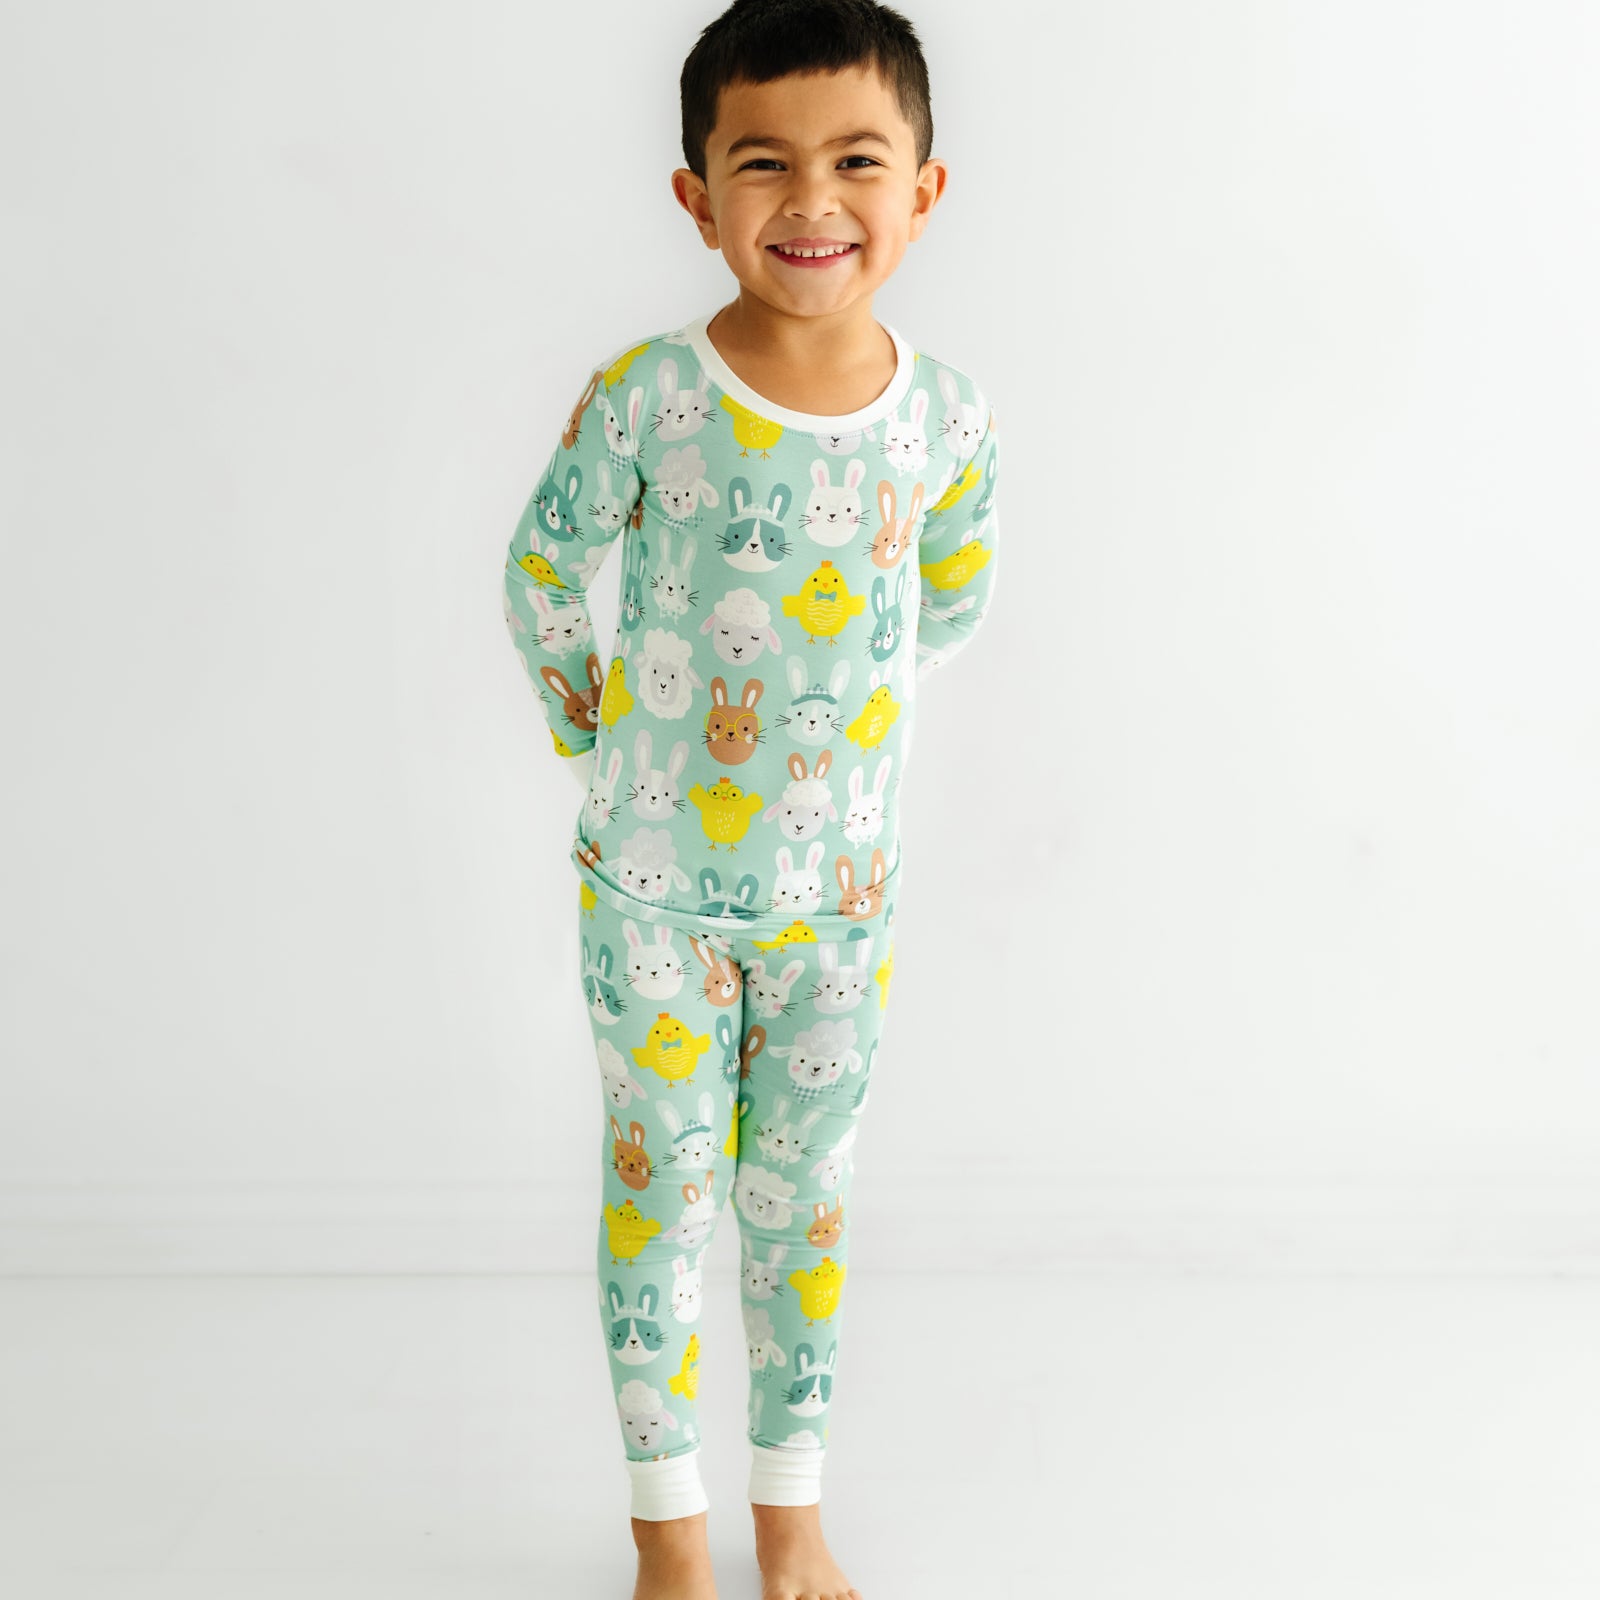 Child posing wearing a Aqua Pastel Parade two piece pajama set